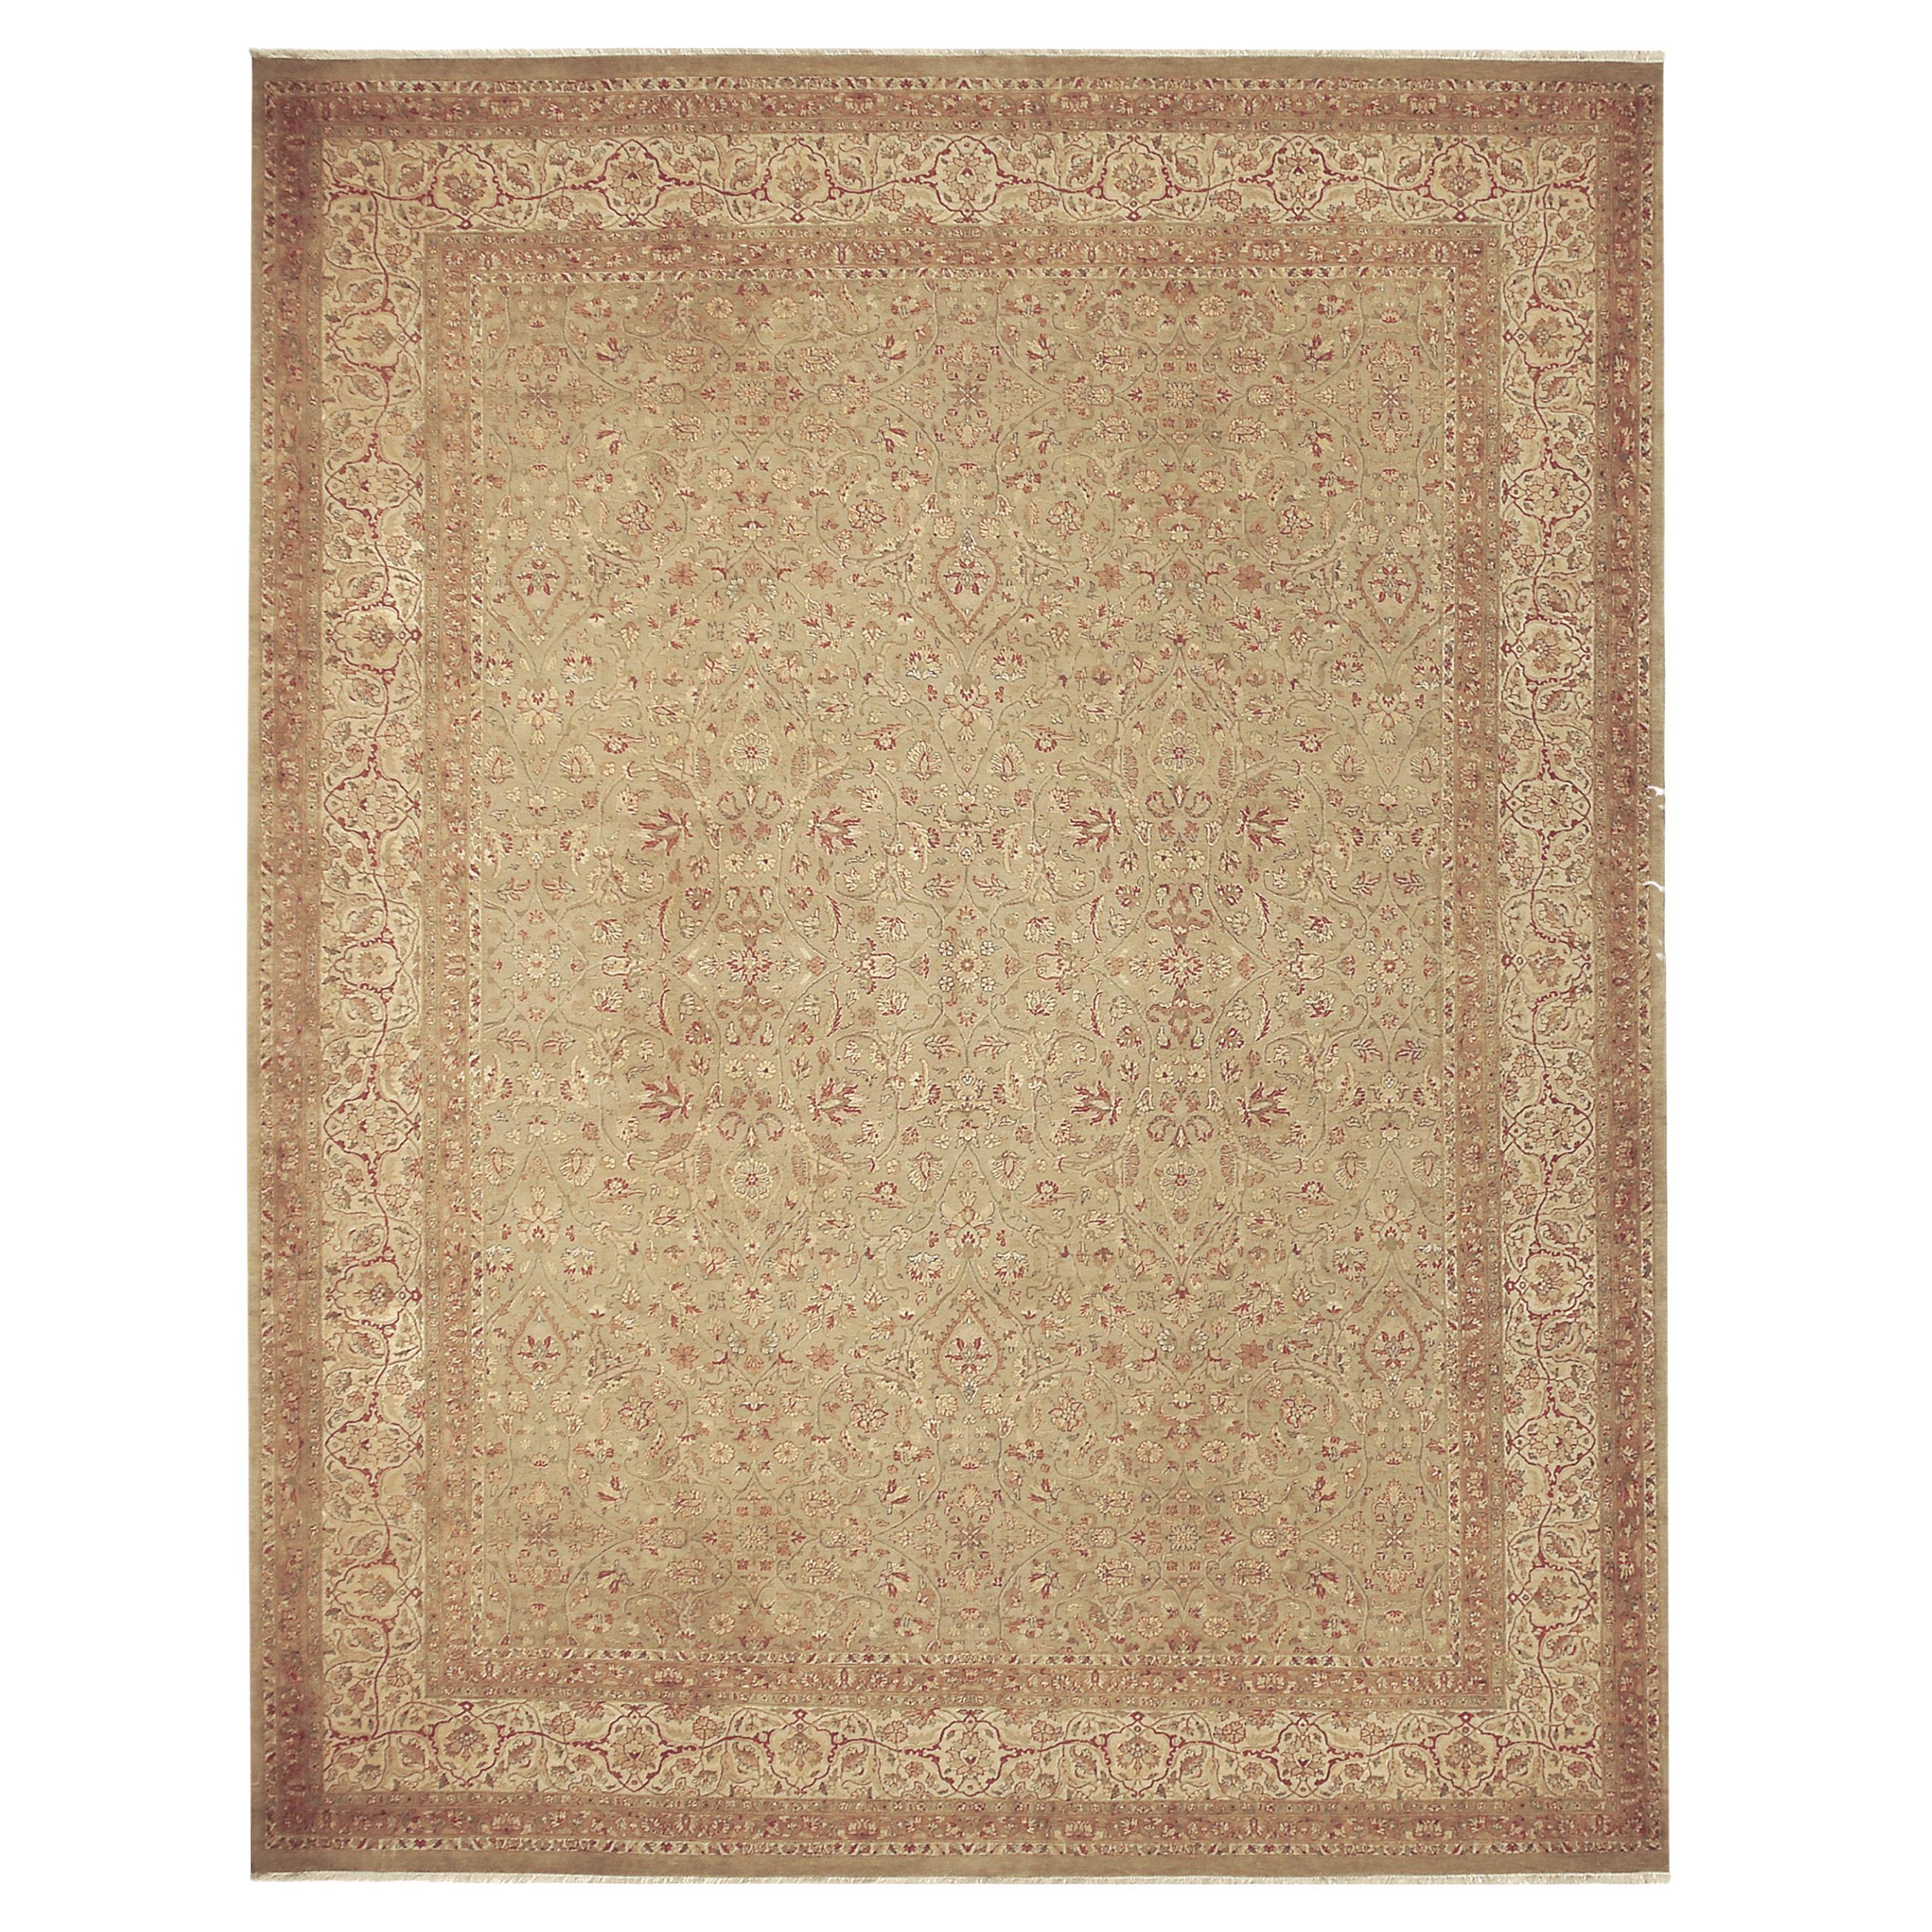 Luxuriöser traditioneller handgeknüpfter Emogli-Teppich in Khaki und Creme 10x14